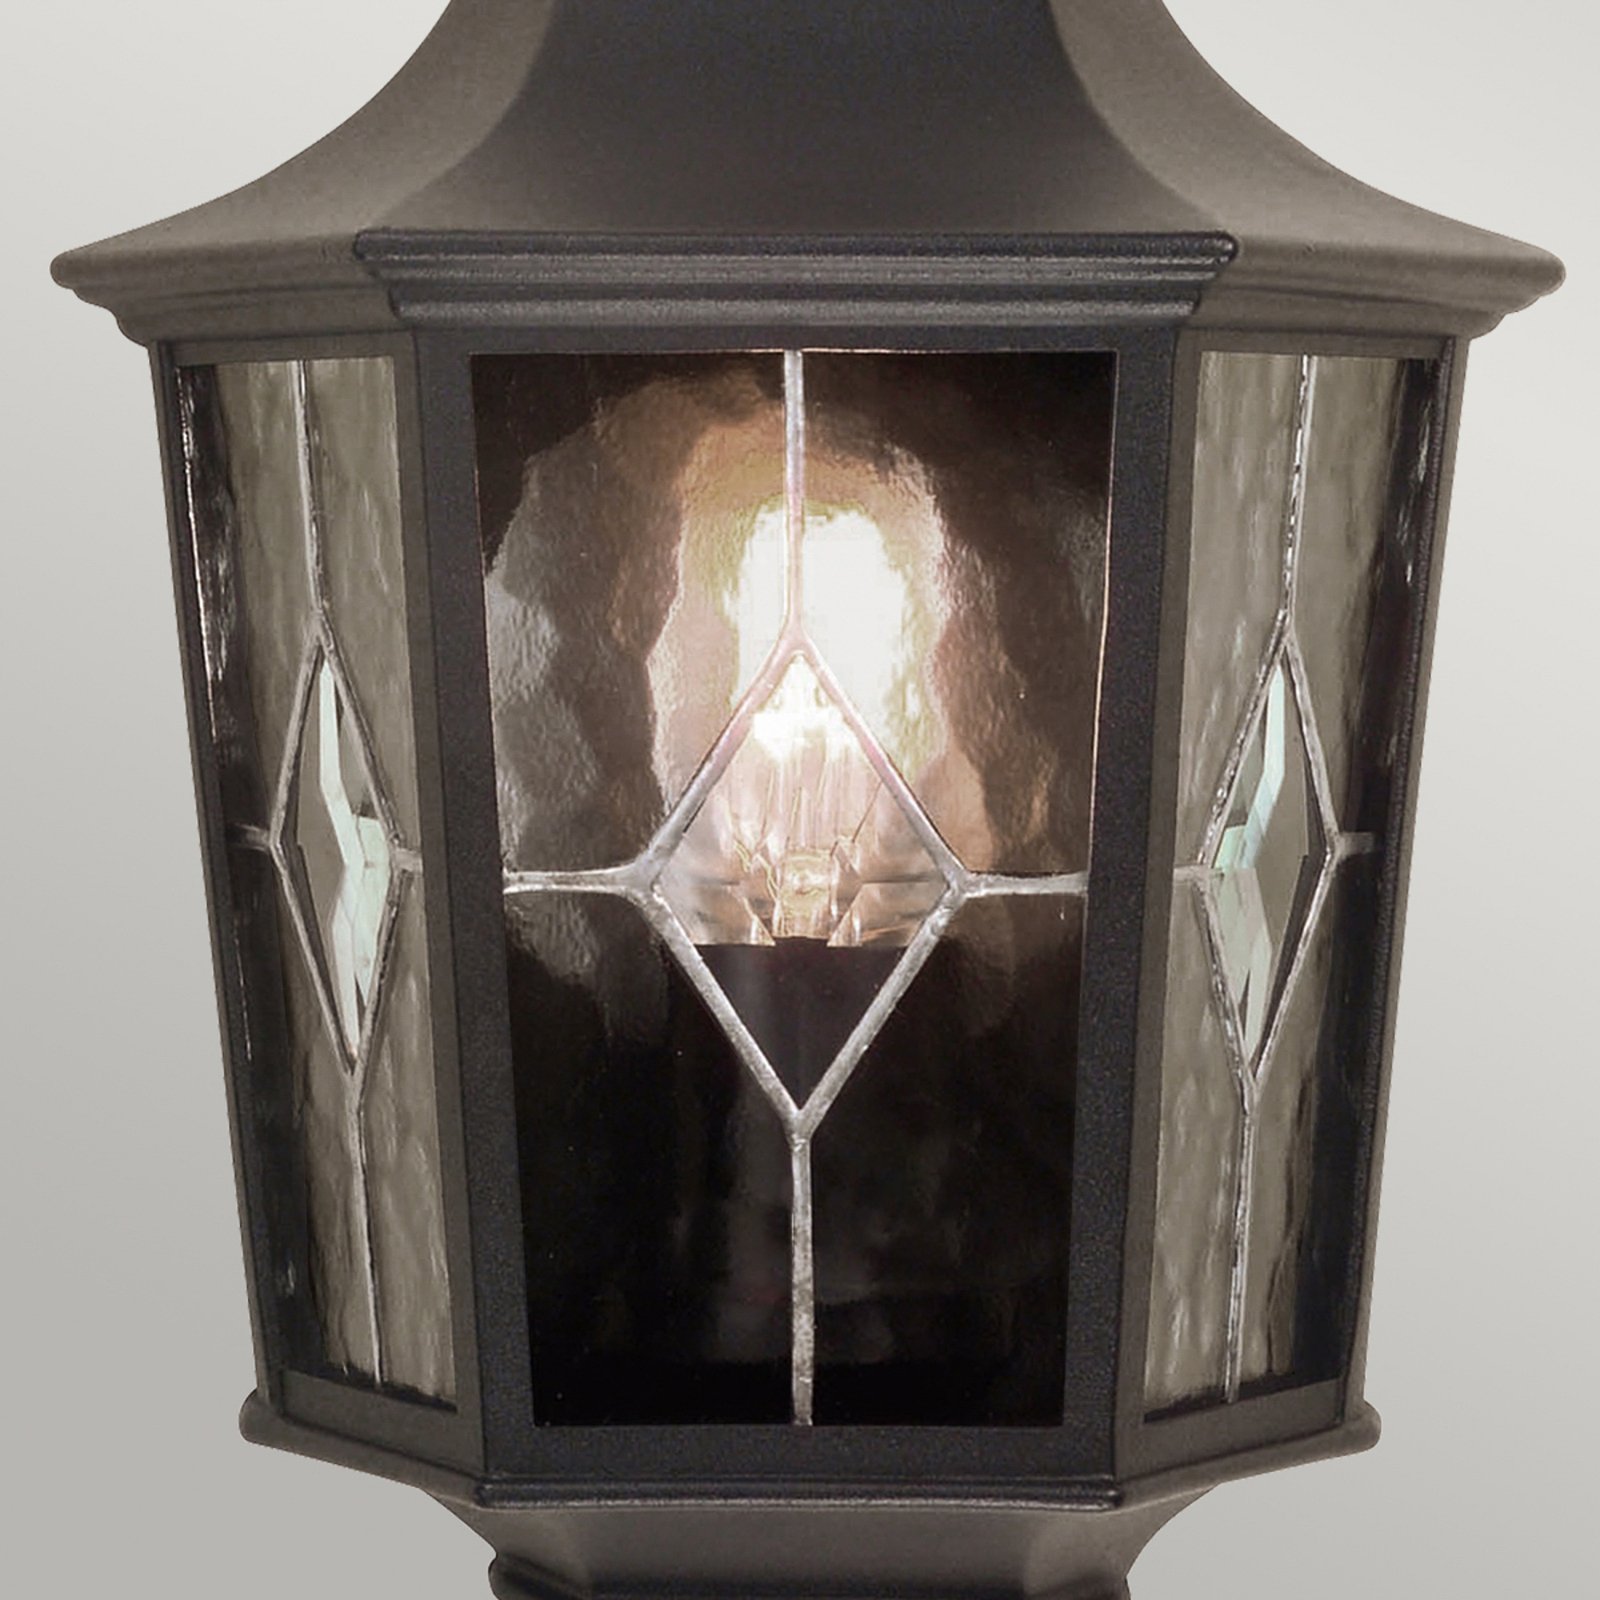 Norfolk outdoor wall light, half lantern, black